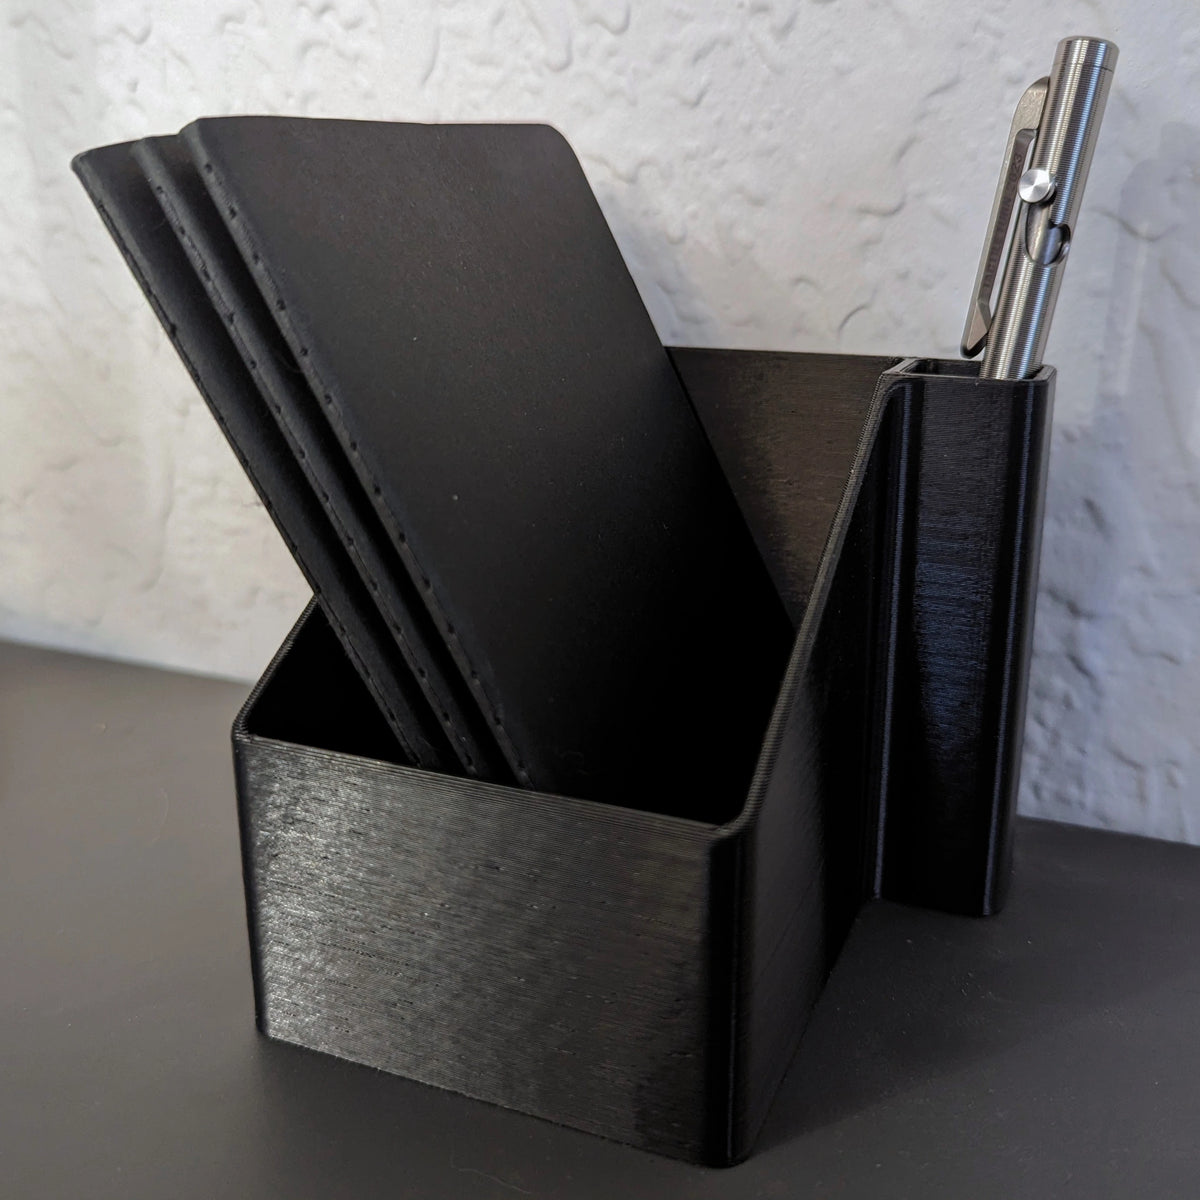 Pocket Notebook Holder